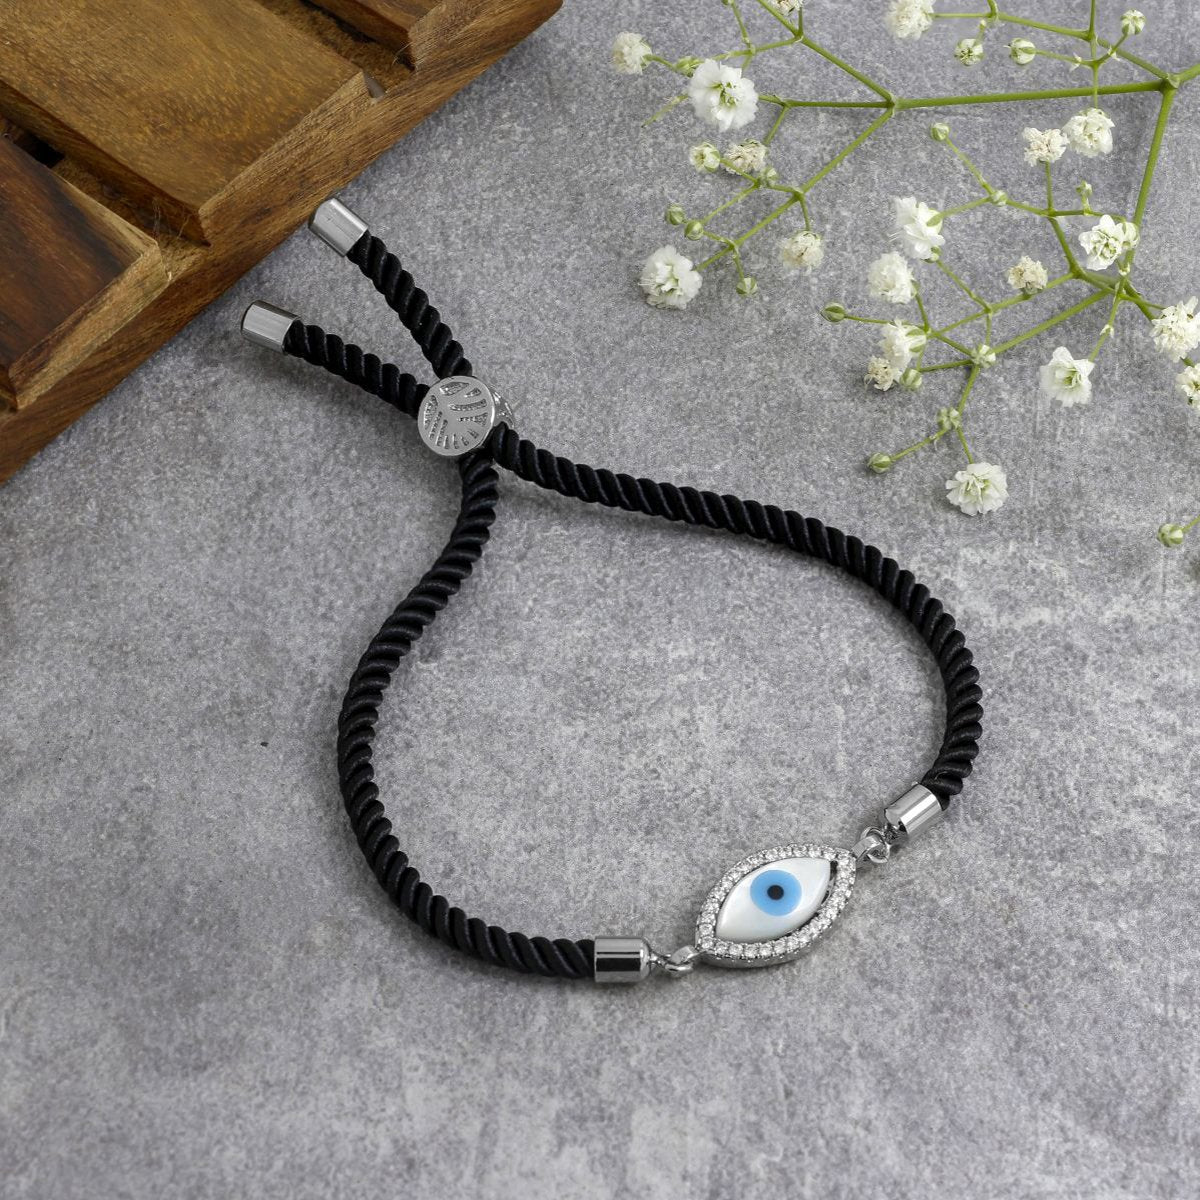 Black Thread Handmade Unisex Evil Eye Bracelet at Rs 40/piece in New Delhi